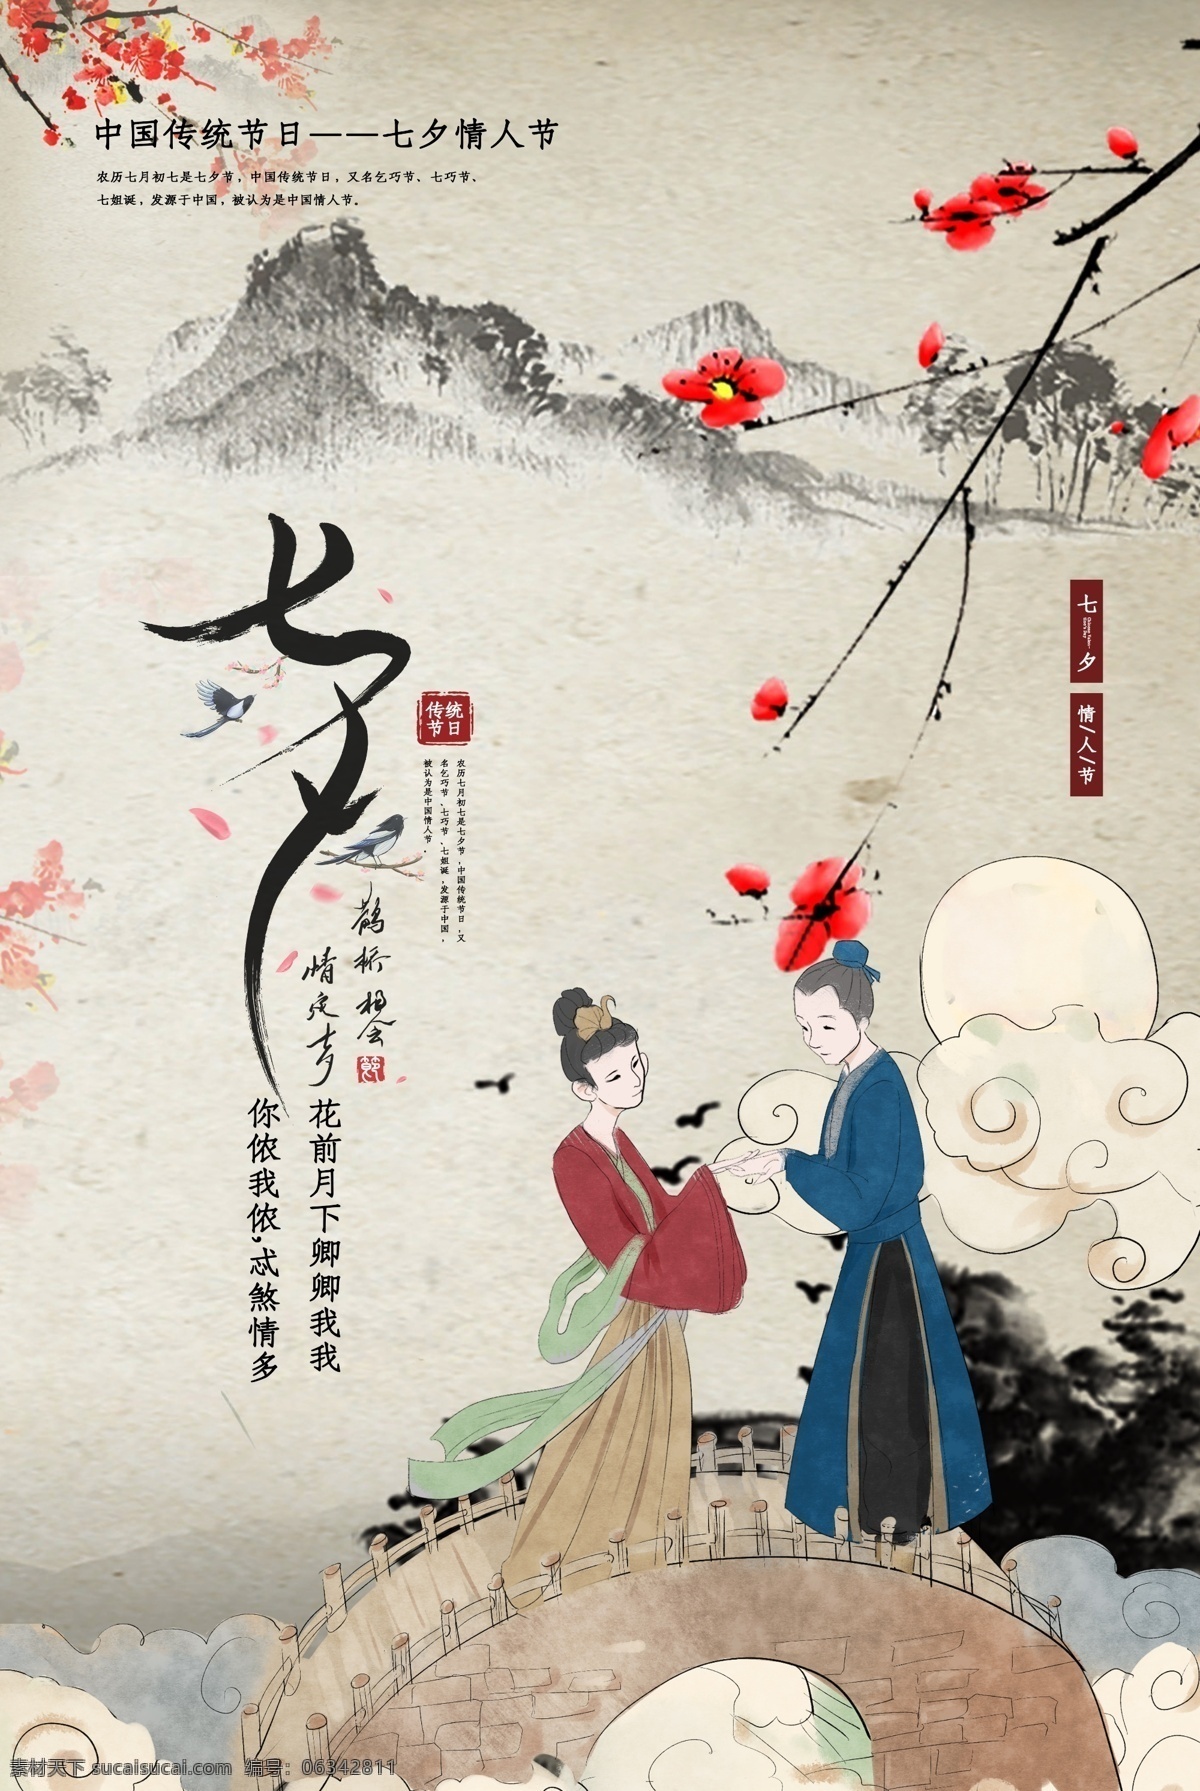 七夕 传统节日 宣传海报 传统 节日 宣传 海报 传统节日海报